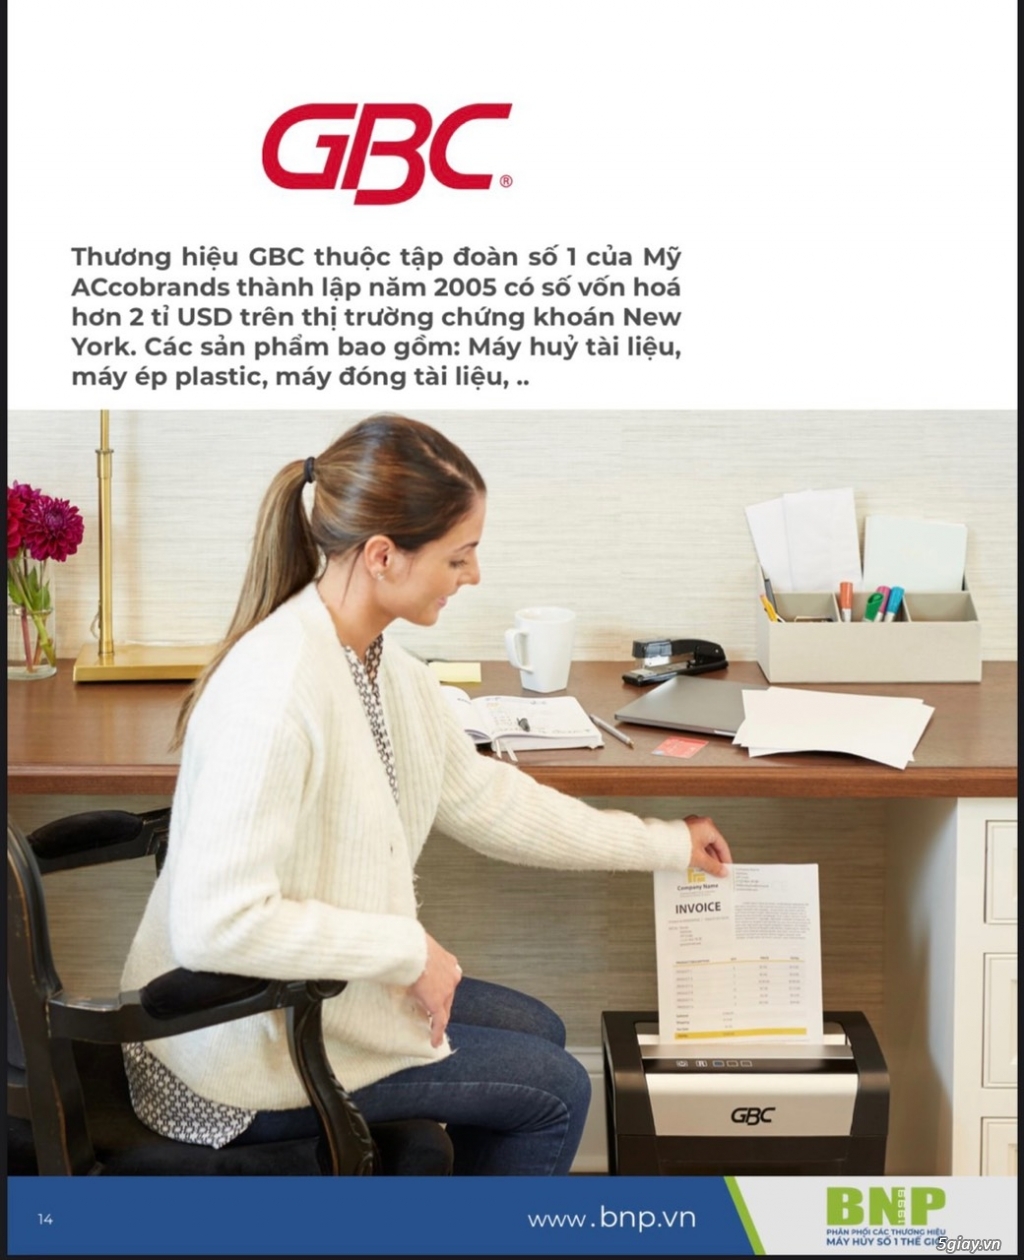 Tại sao lại nên lựa chọn máy hủy giấy GBC?